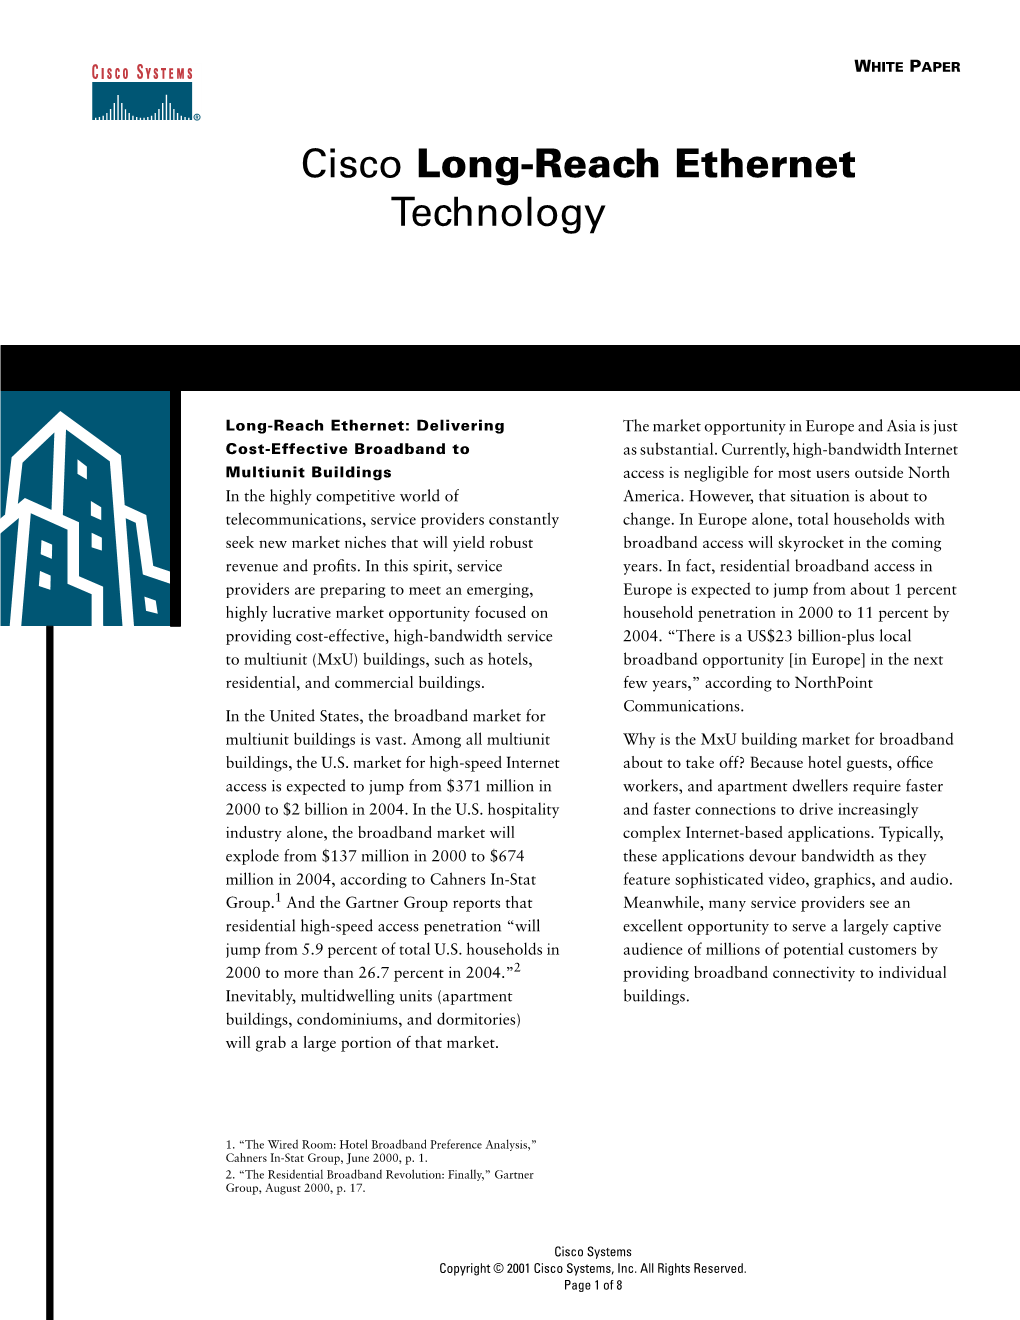 Cisco Long-Reach Ethernet Technology